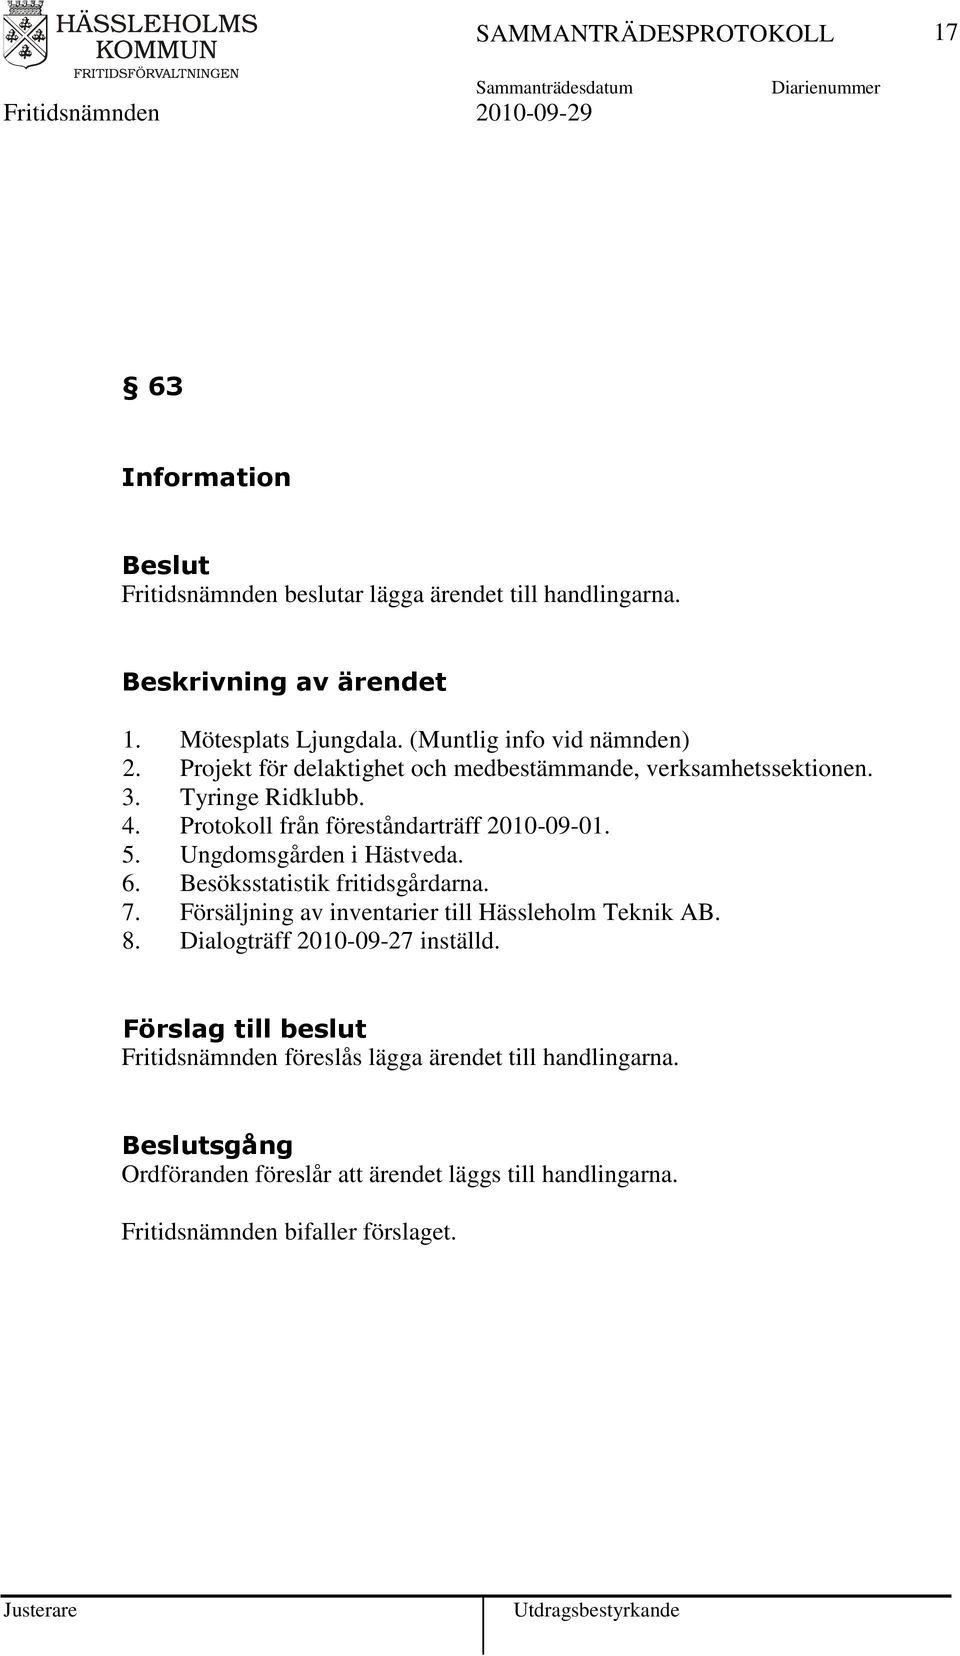 Ungdomsgården i Hästveda. 6. Besöksstatistik fritidsgårdarna. 7. Försäljning av inventarier till Hässleholm Teknik AB. 8.